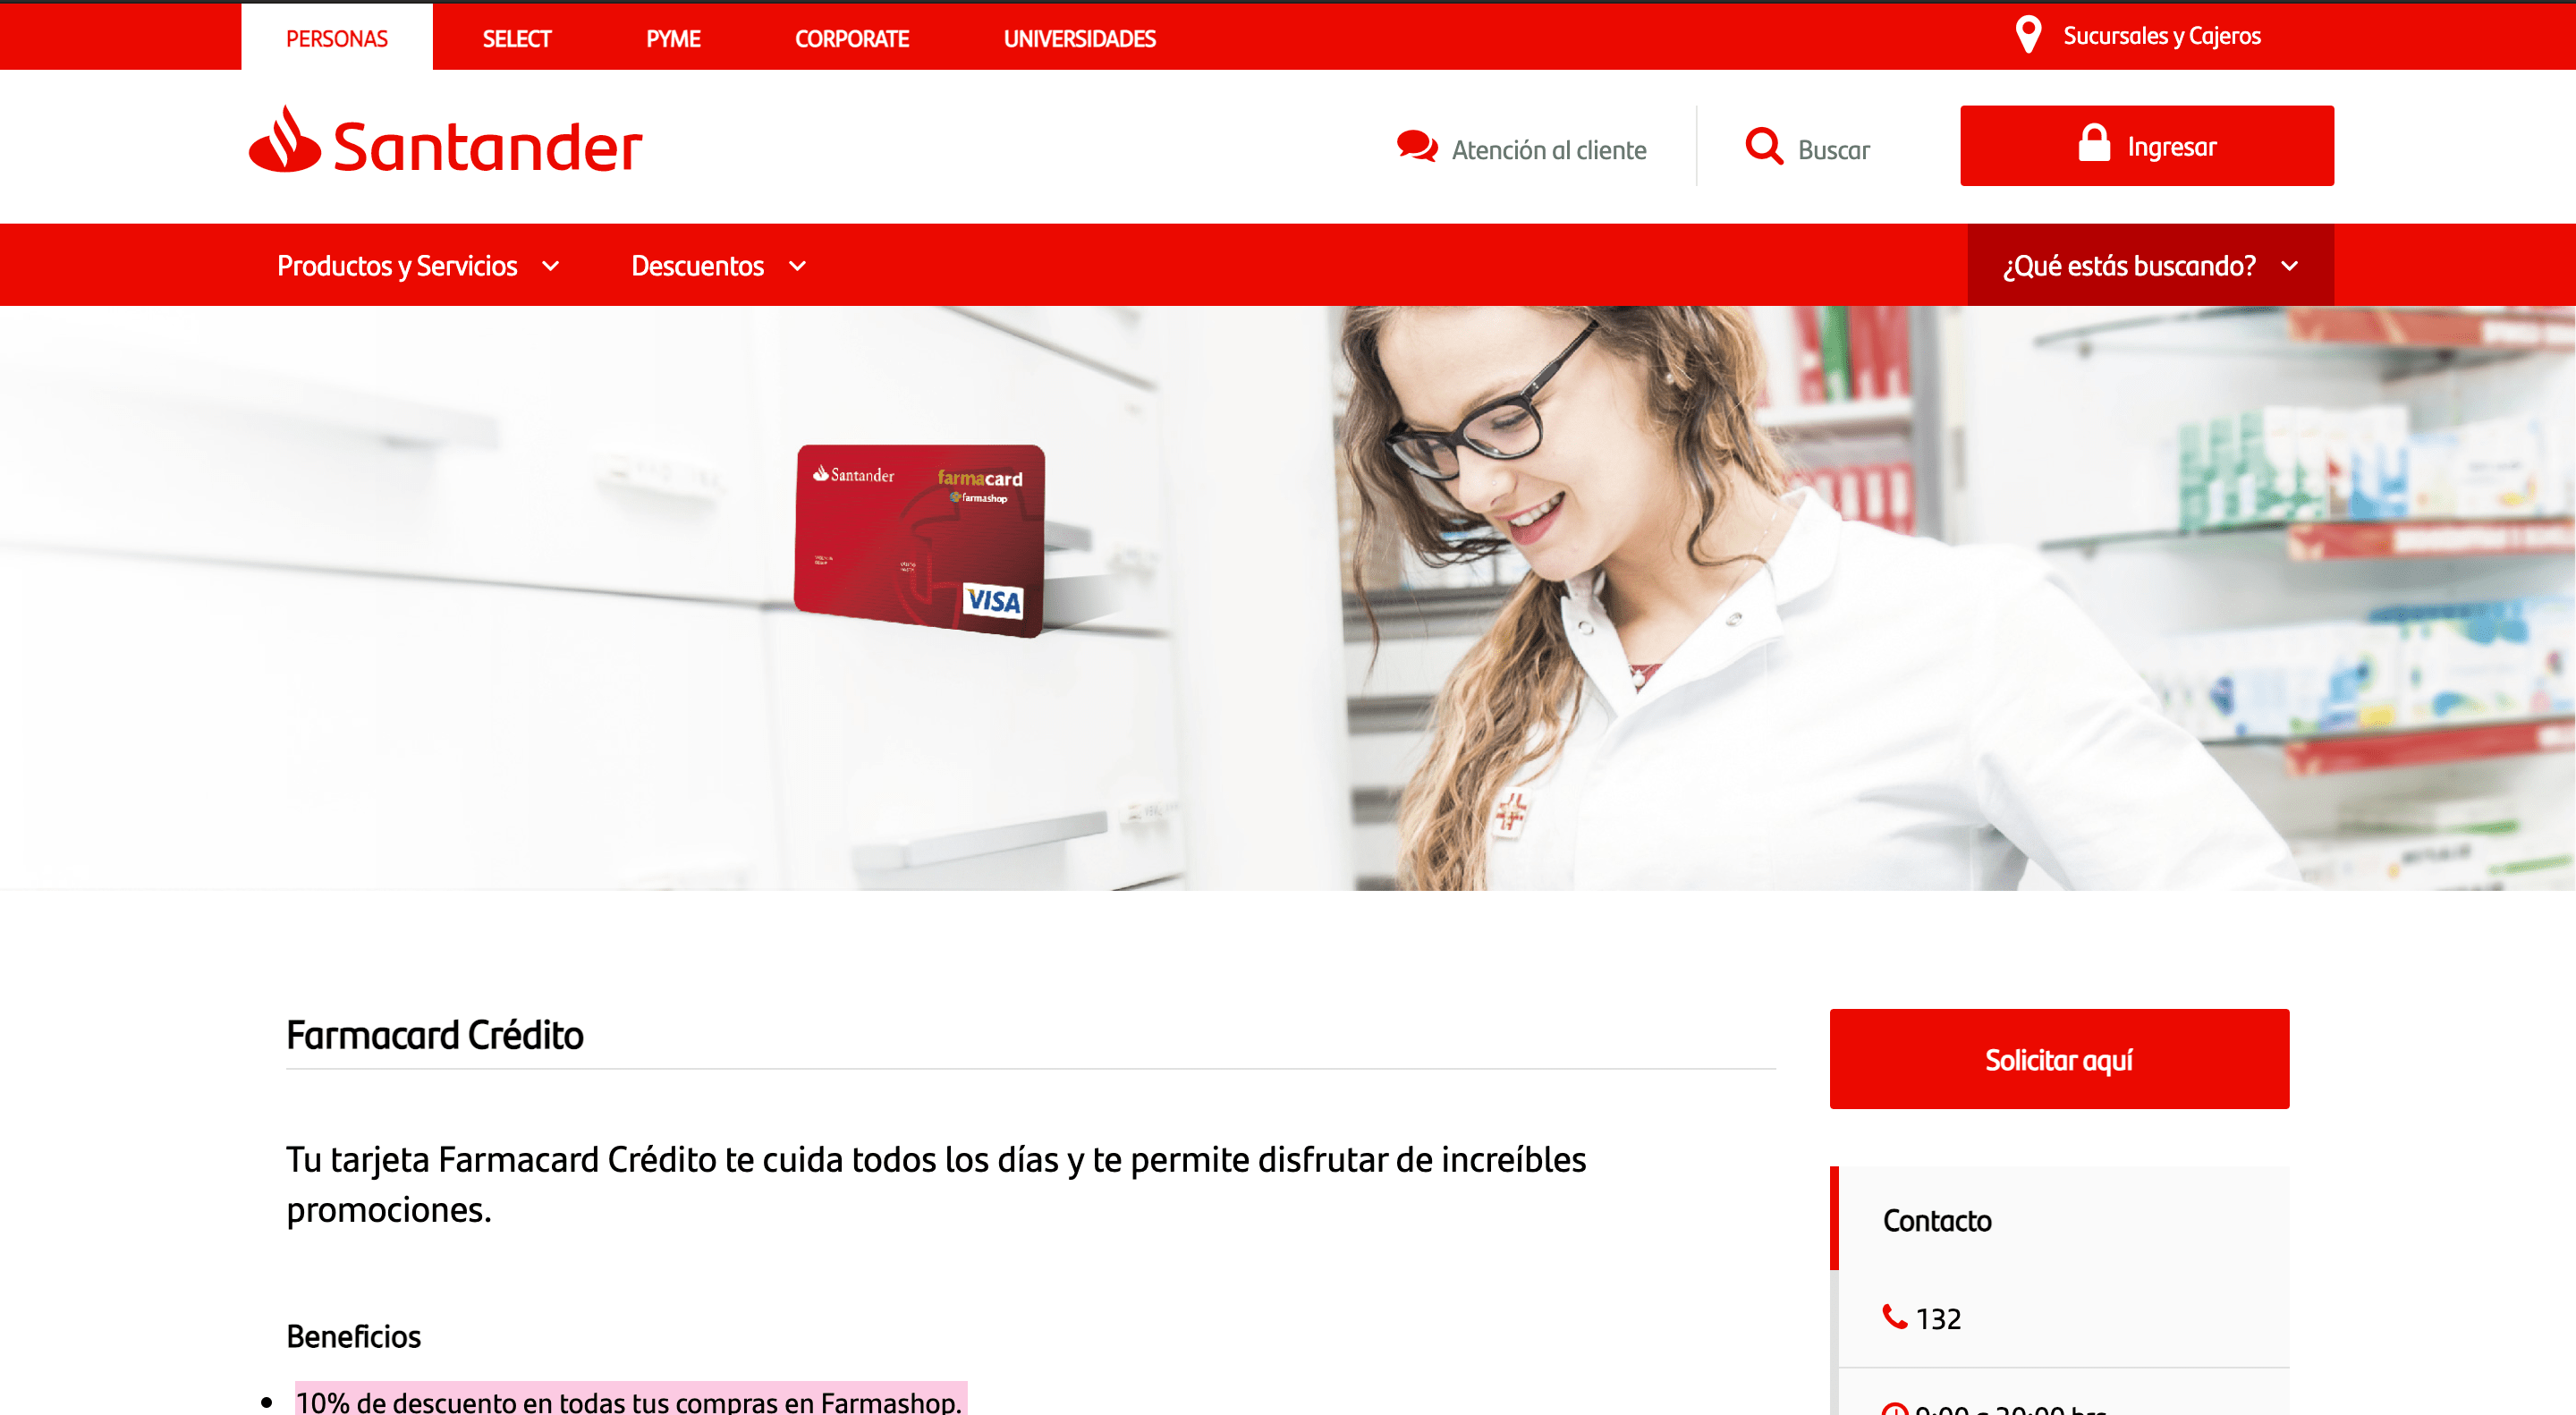 Santander Farmacard Crédito hasta $40 000